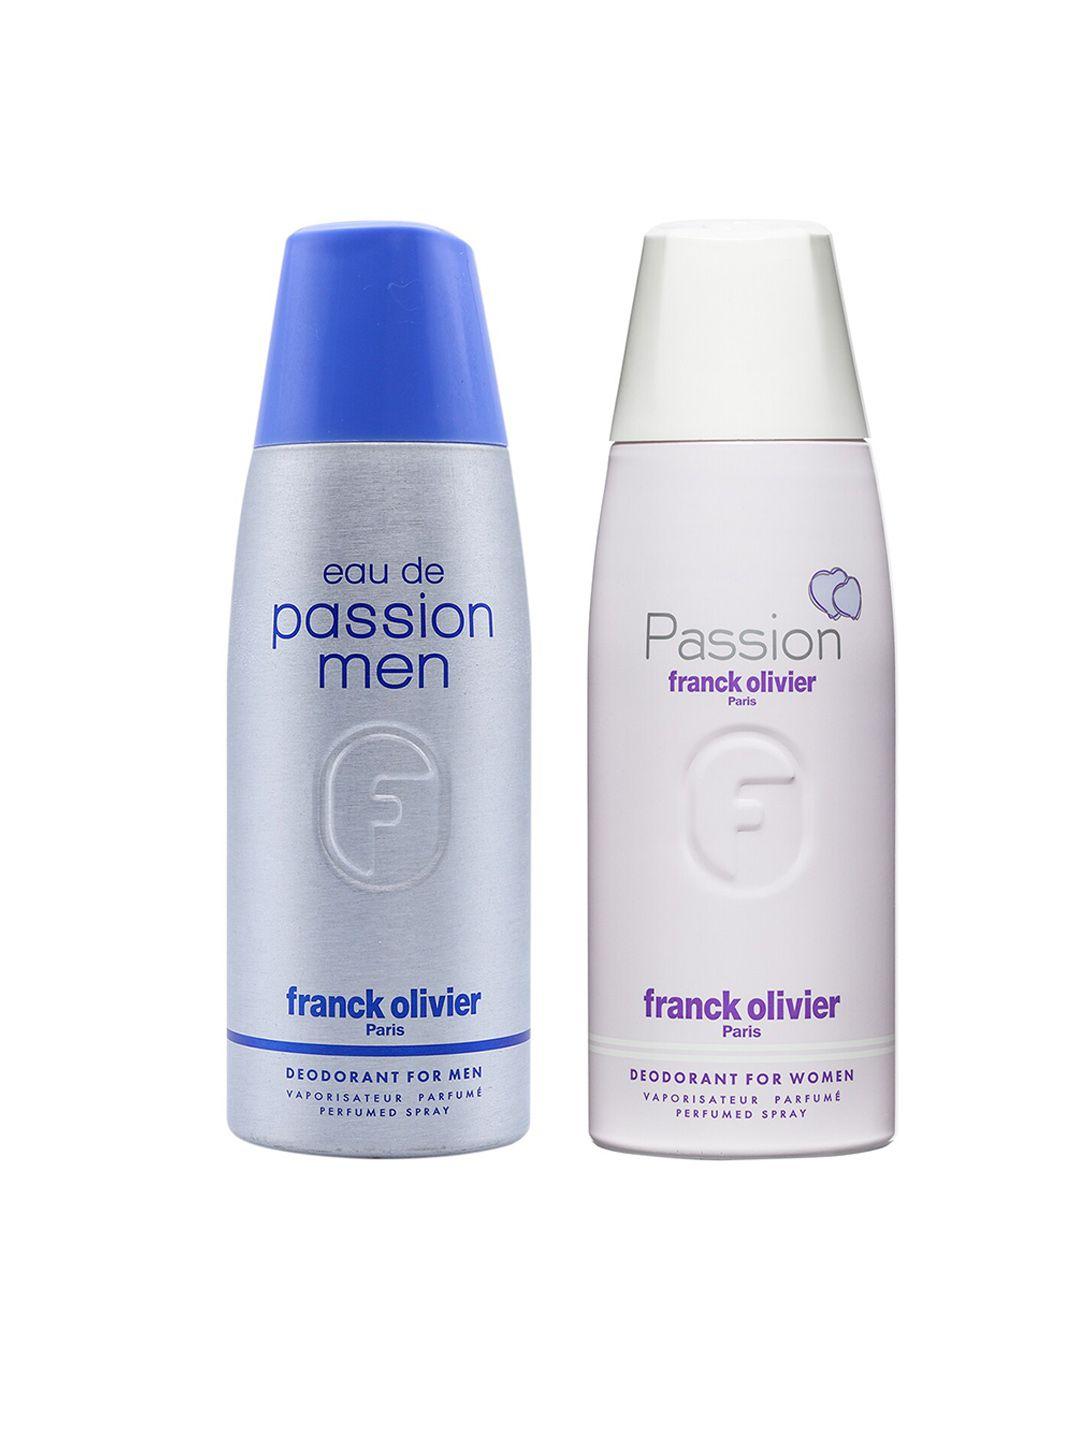 franck olivier set of 2 deodorants - eau de passion for men & passion for women 250ml each